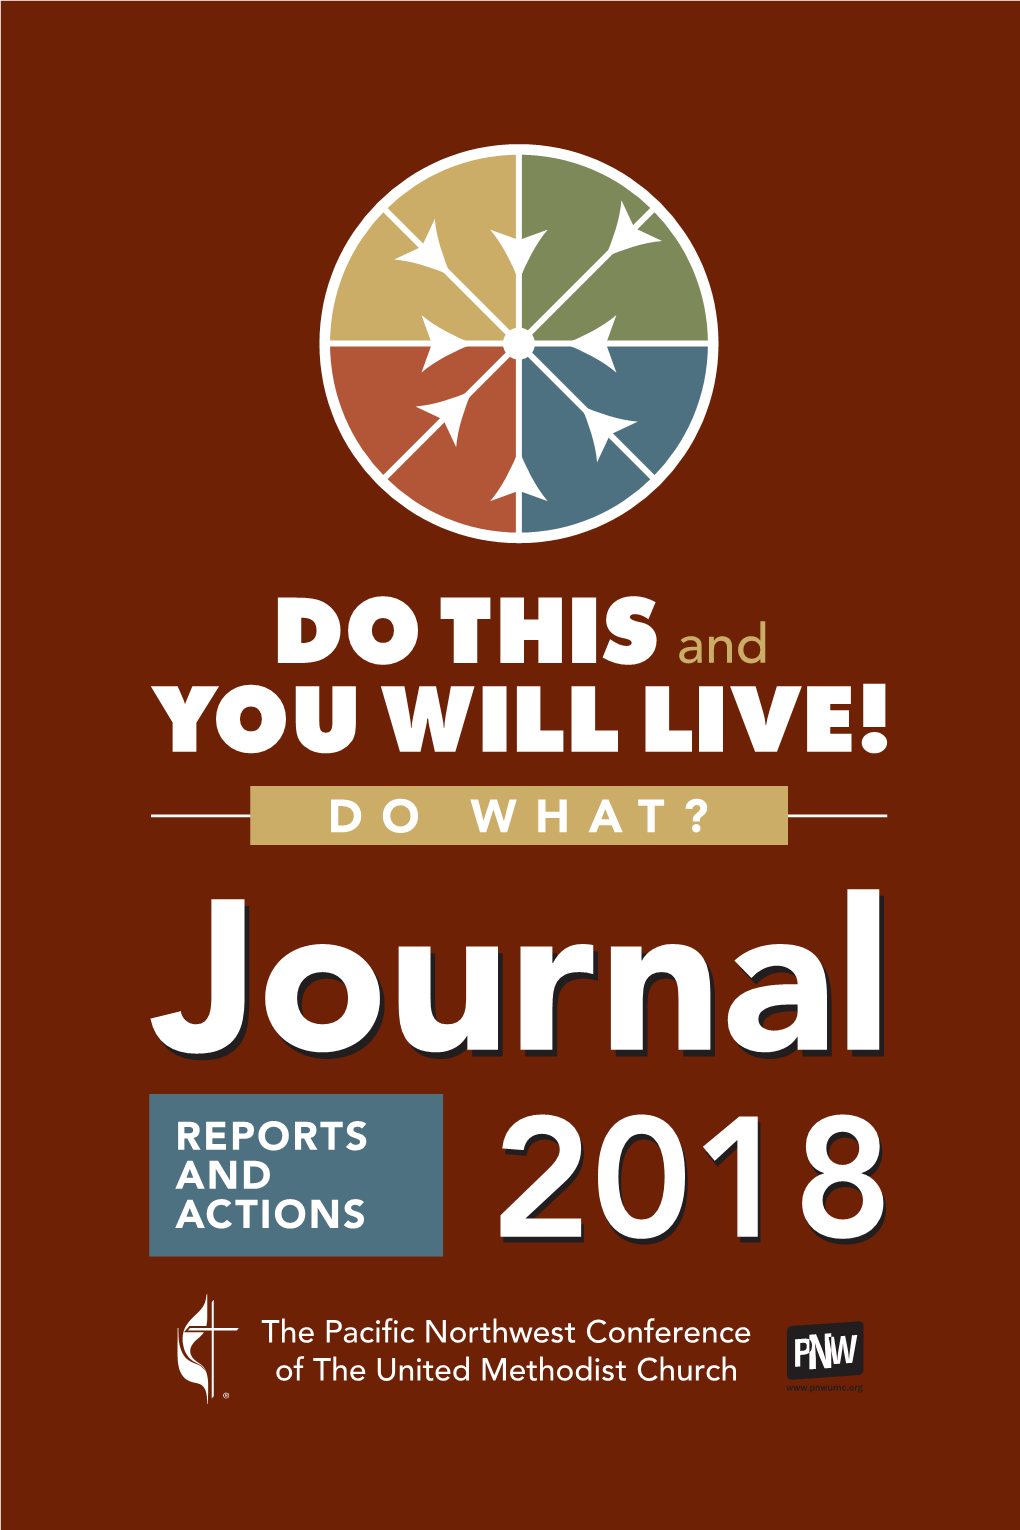 Journal 2018 2018 Conference Journal Team Cindy Haverkamp Wes Stanton Patrick Scriven David Valera